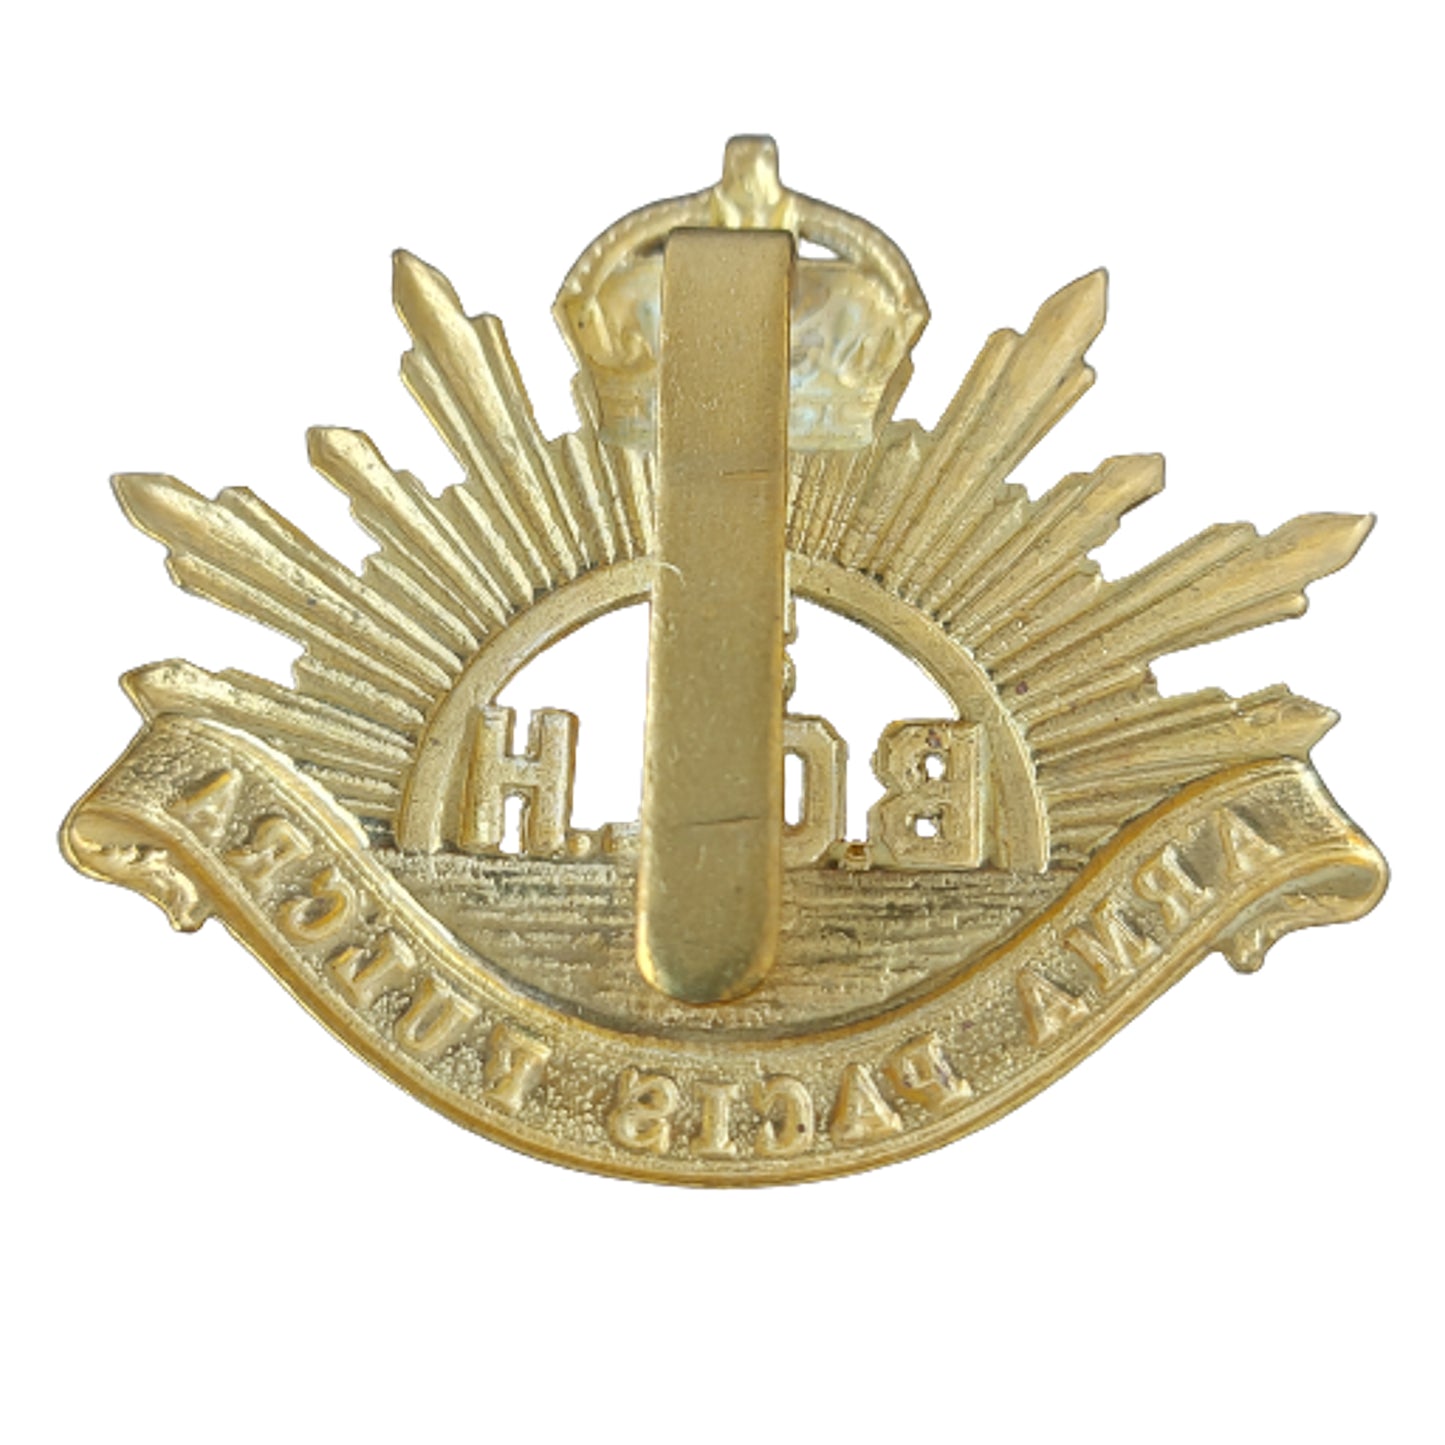 Pre-WW1 Canadian Militia 5th British Columbia Light Horse Cap Badge